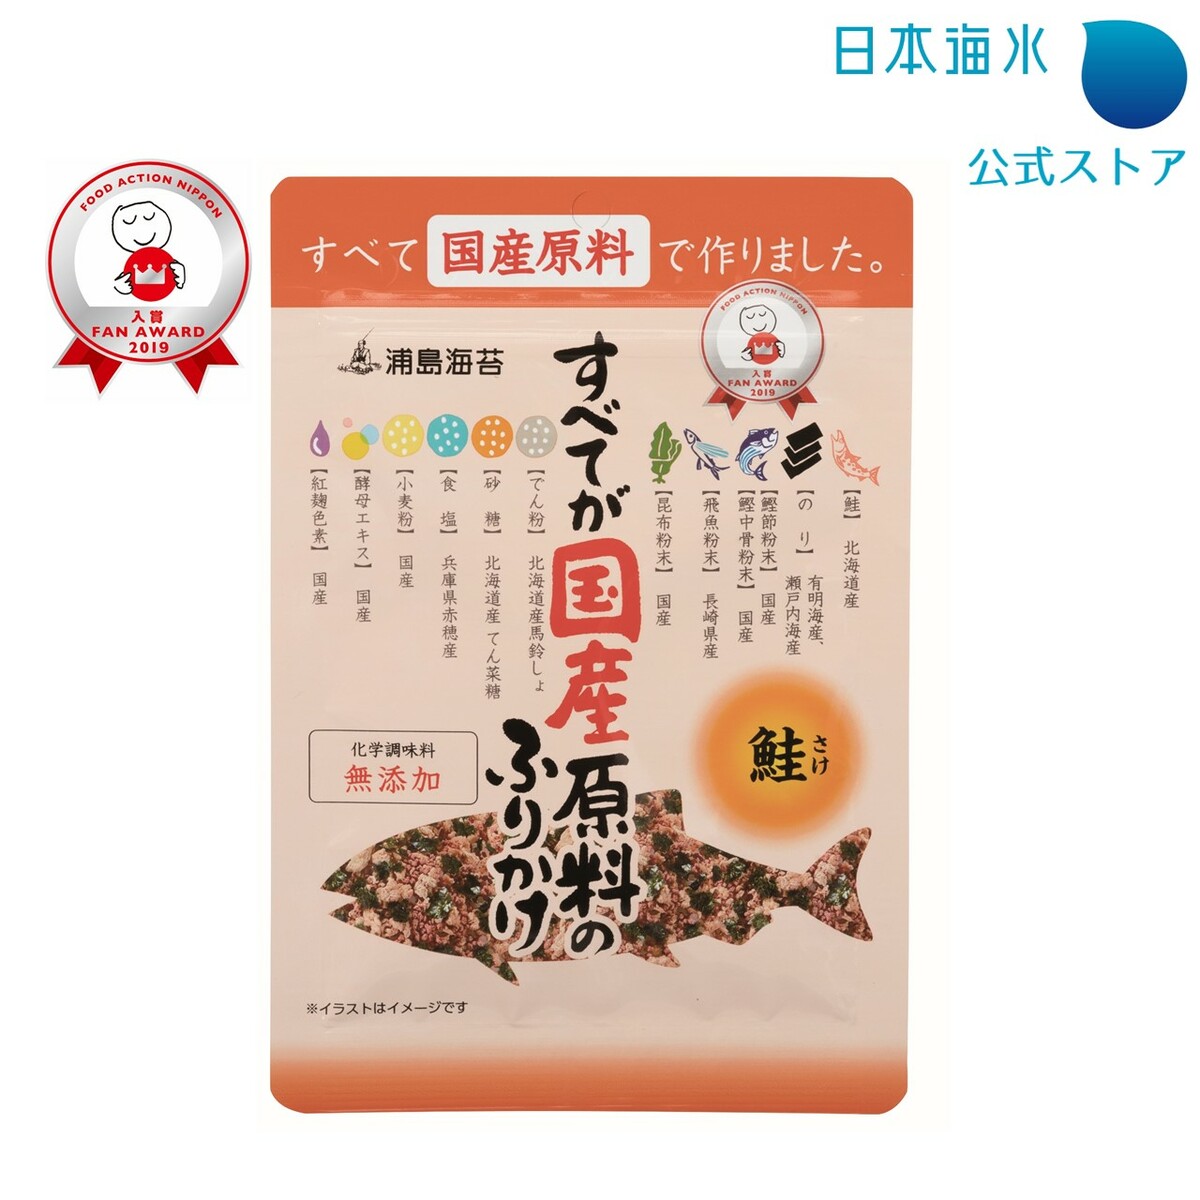 北海道産鮭 化学調味料 無添加 ふりかけ 74 Off 鮭ふりかけ 国産原料 すべてが国産原料のふりかけ 浦島海苔 鮭 日本海水 こだわりふりかけ